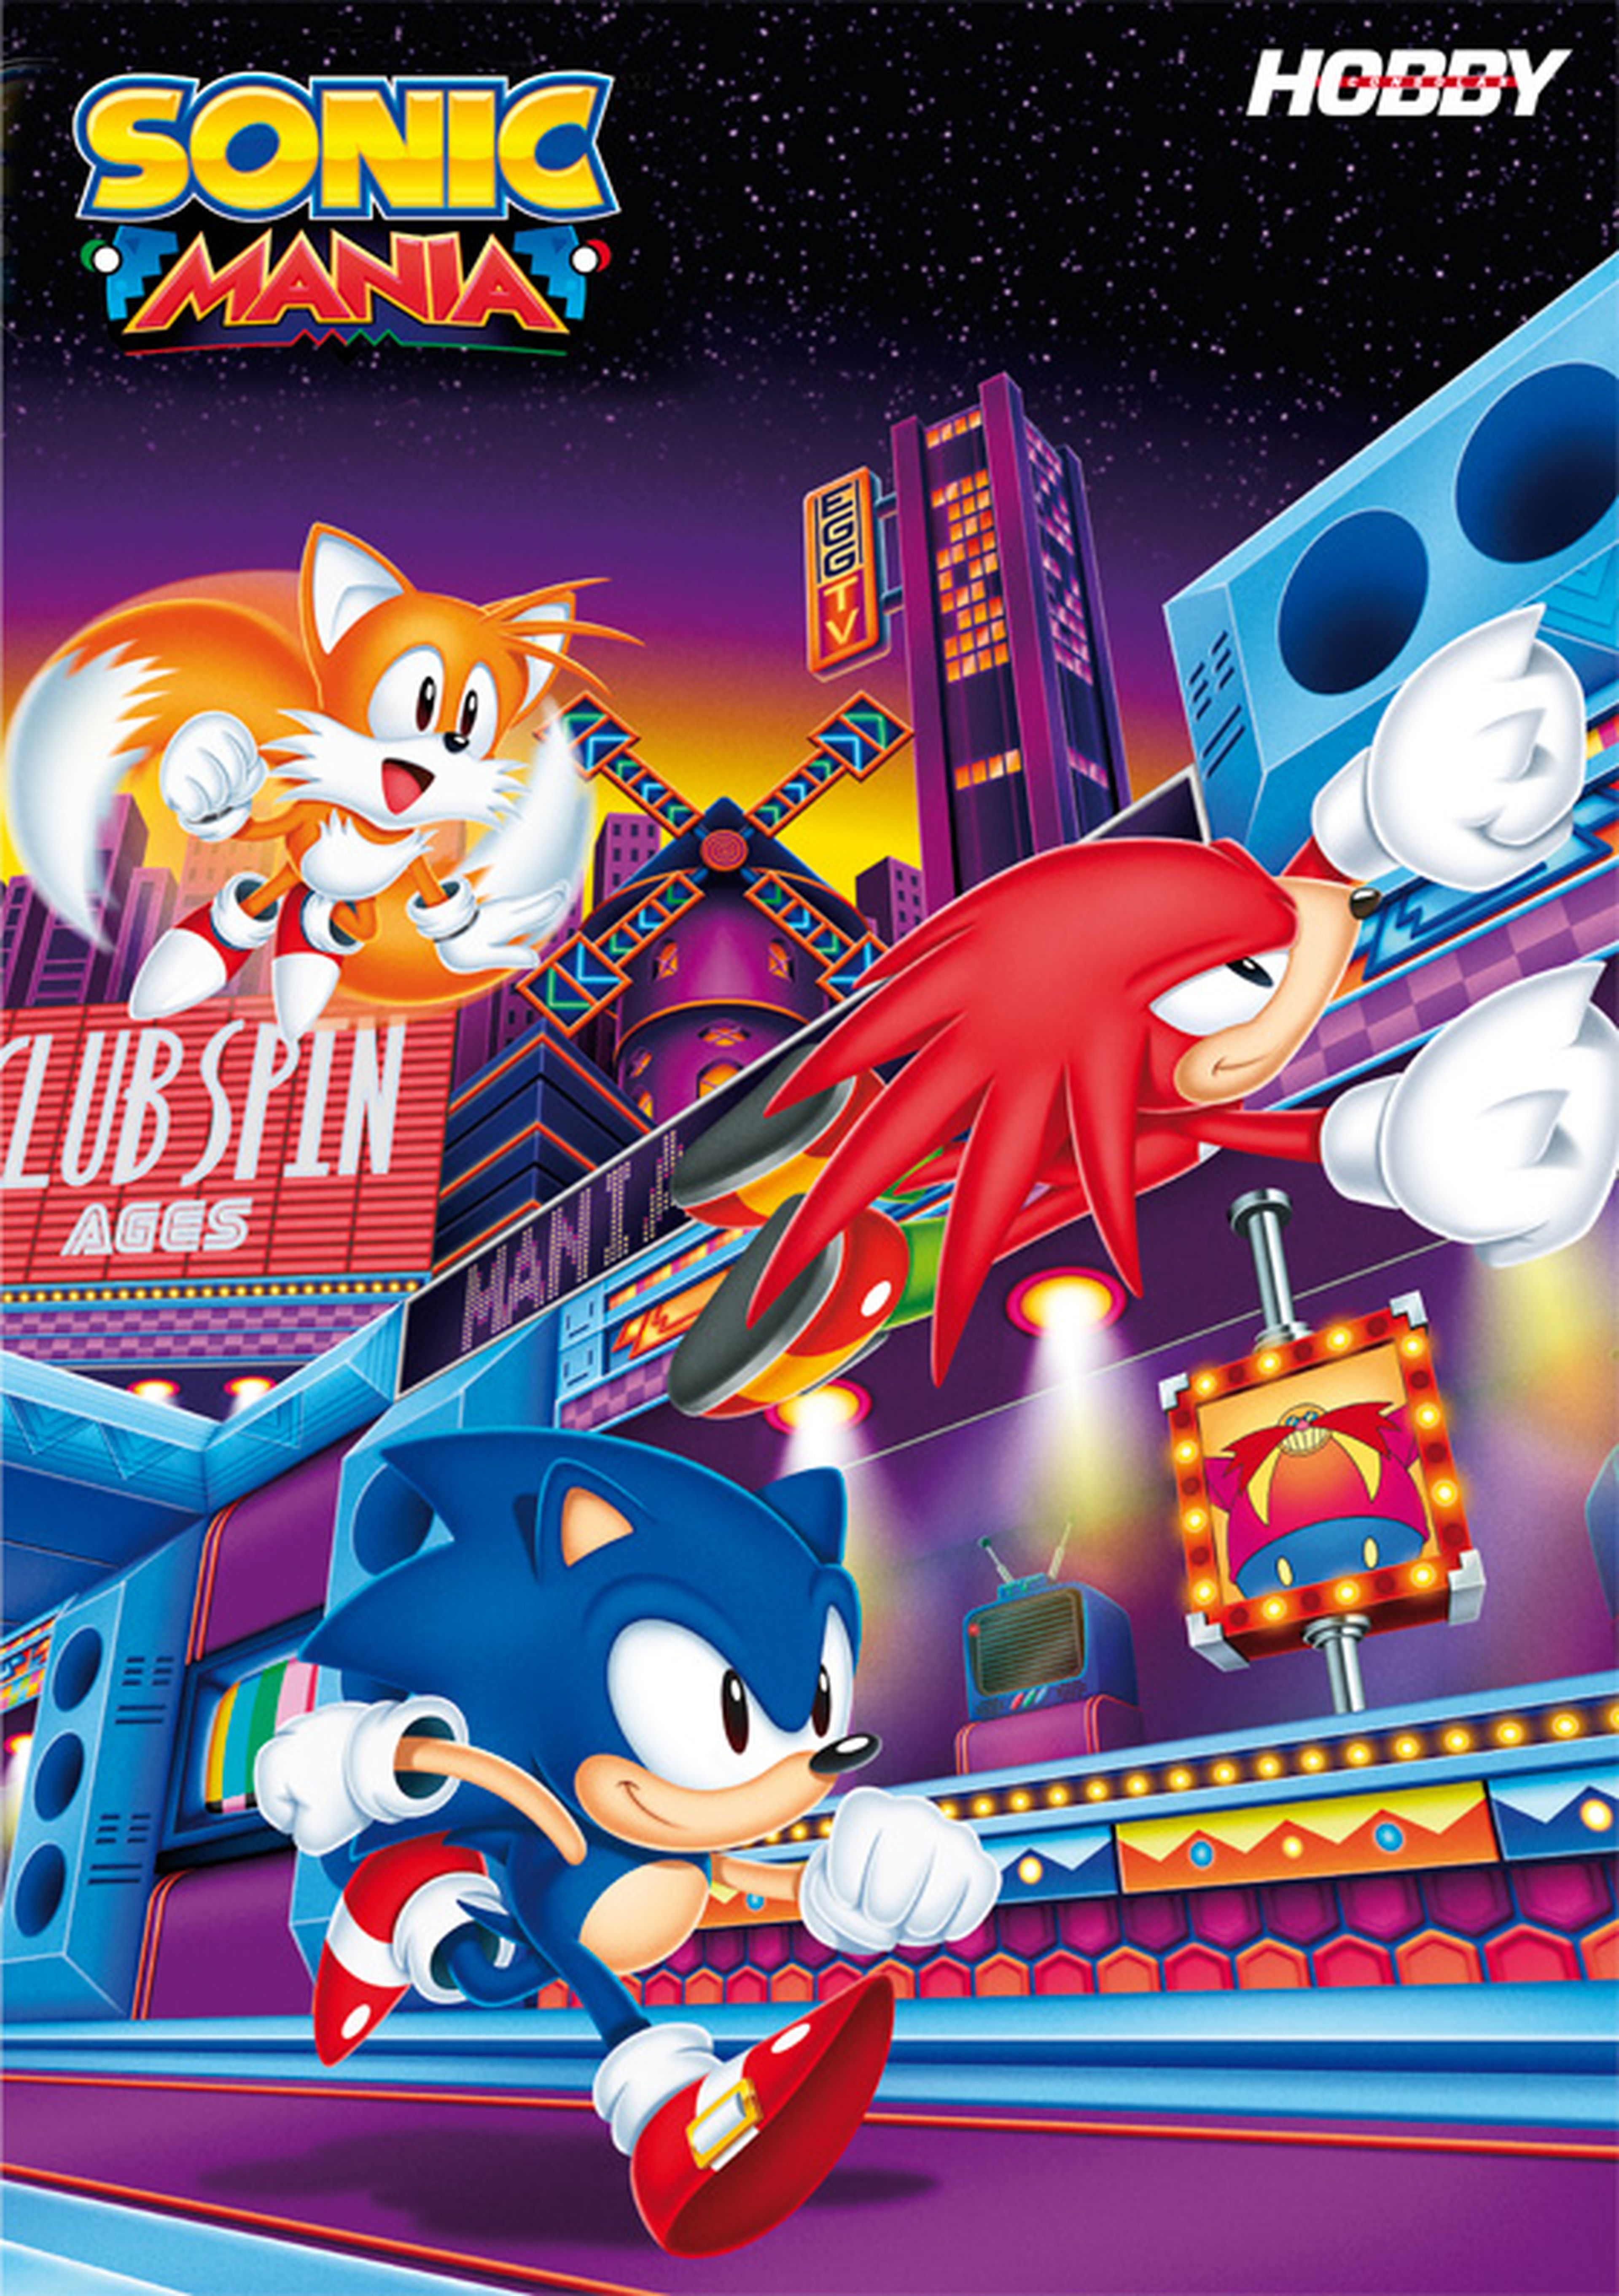 Hobby Consolas 310, a la venta con póster de Sonic Mania y Tekken